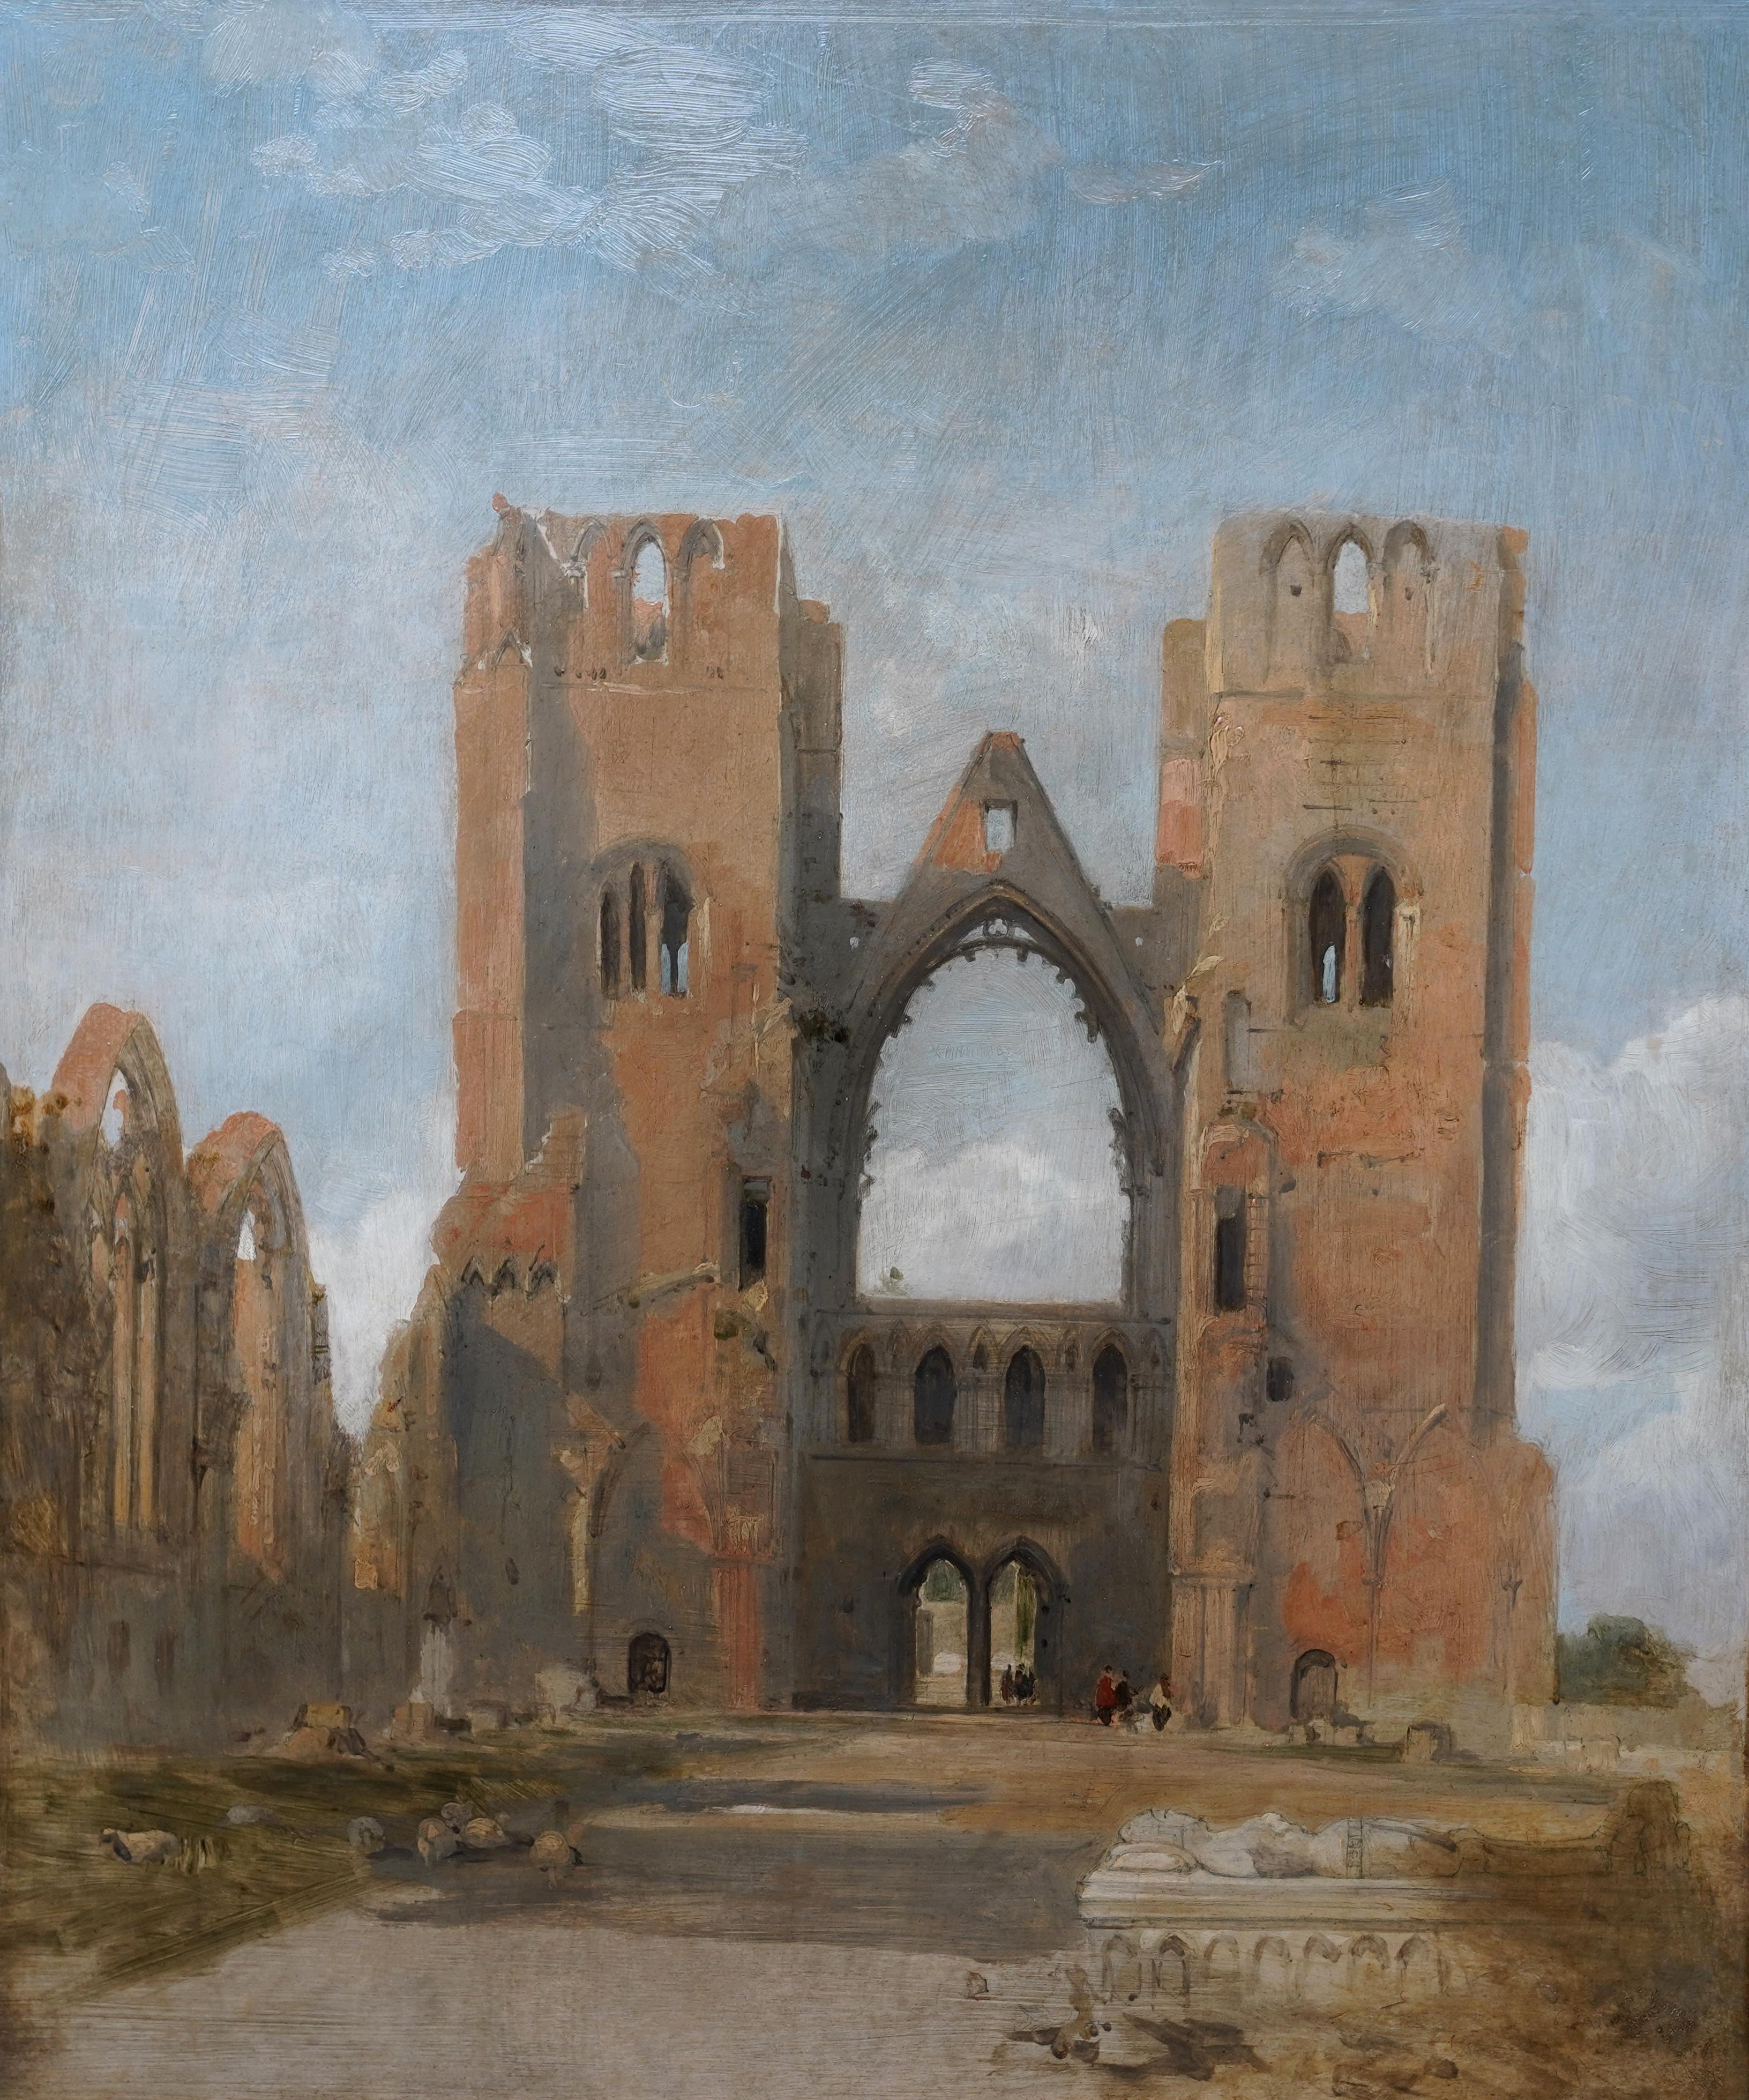 Rues de cathédrales d'Elgin - Peinture à l'huile d'un paysage architectural écossais du 19e siècle - Painting de David Roberts